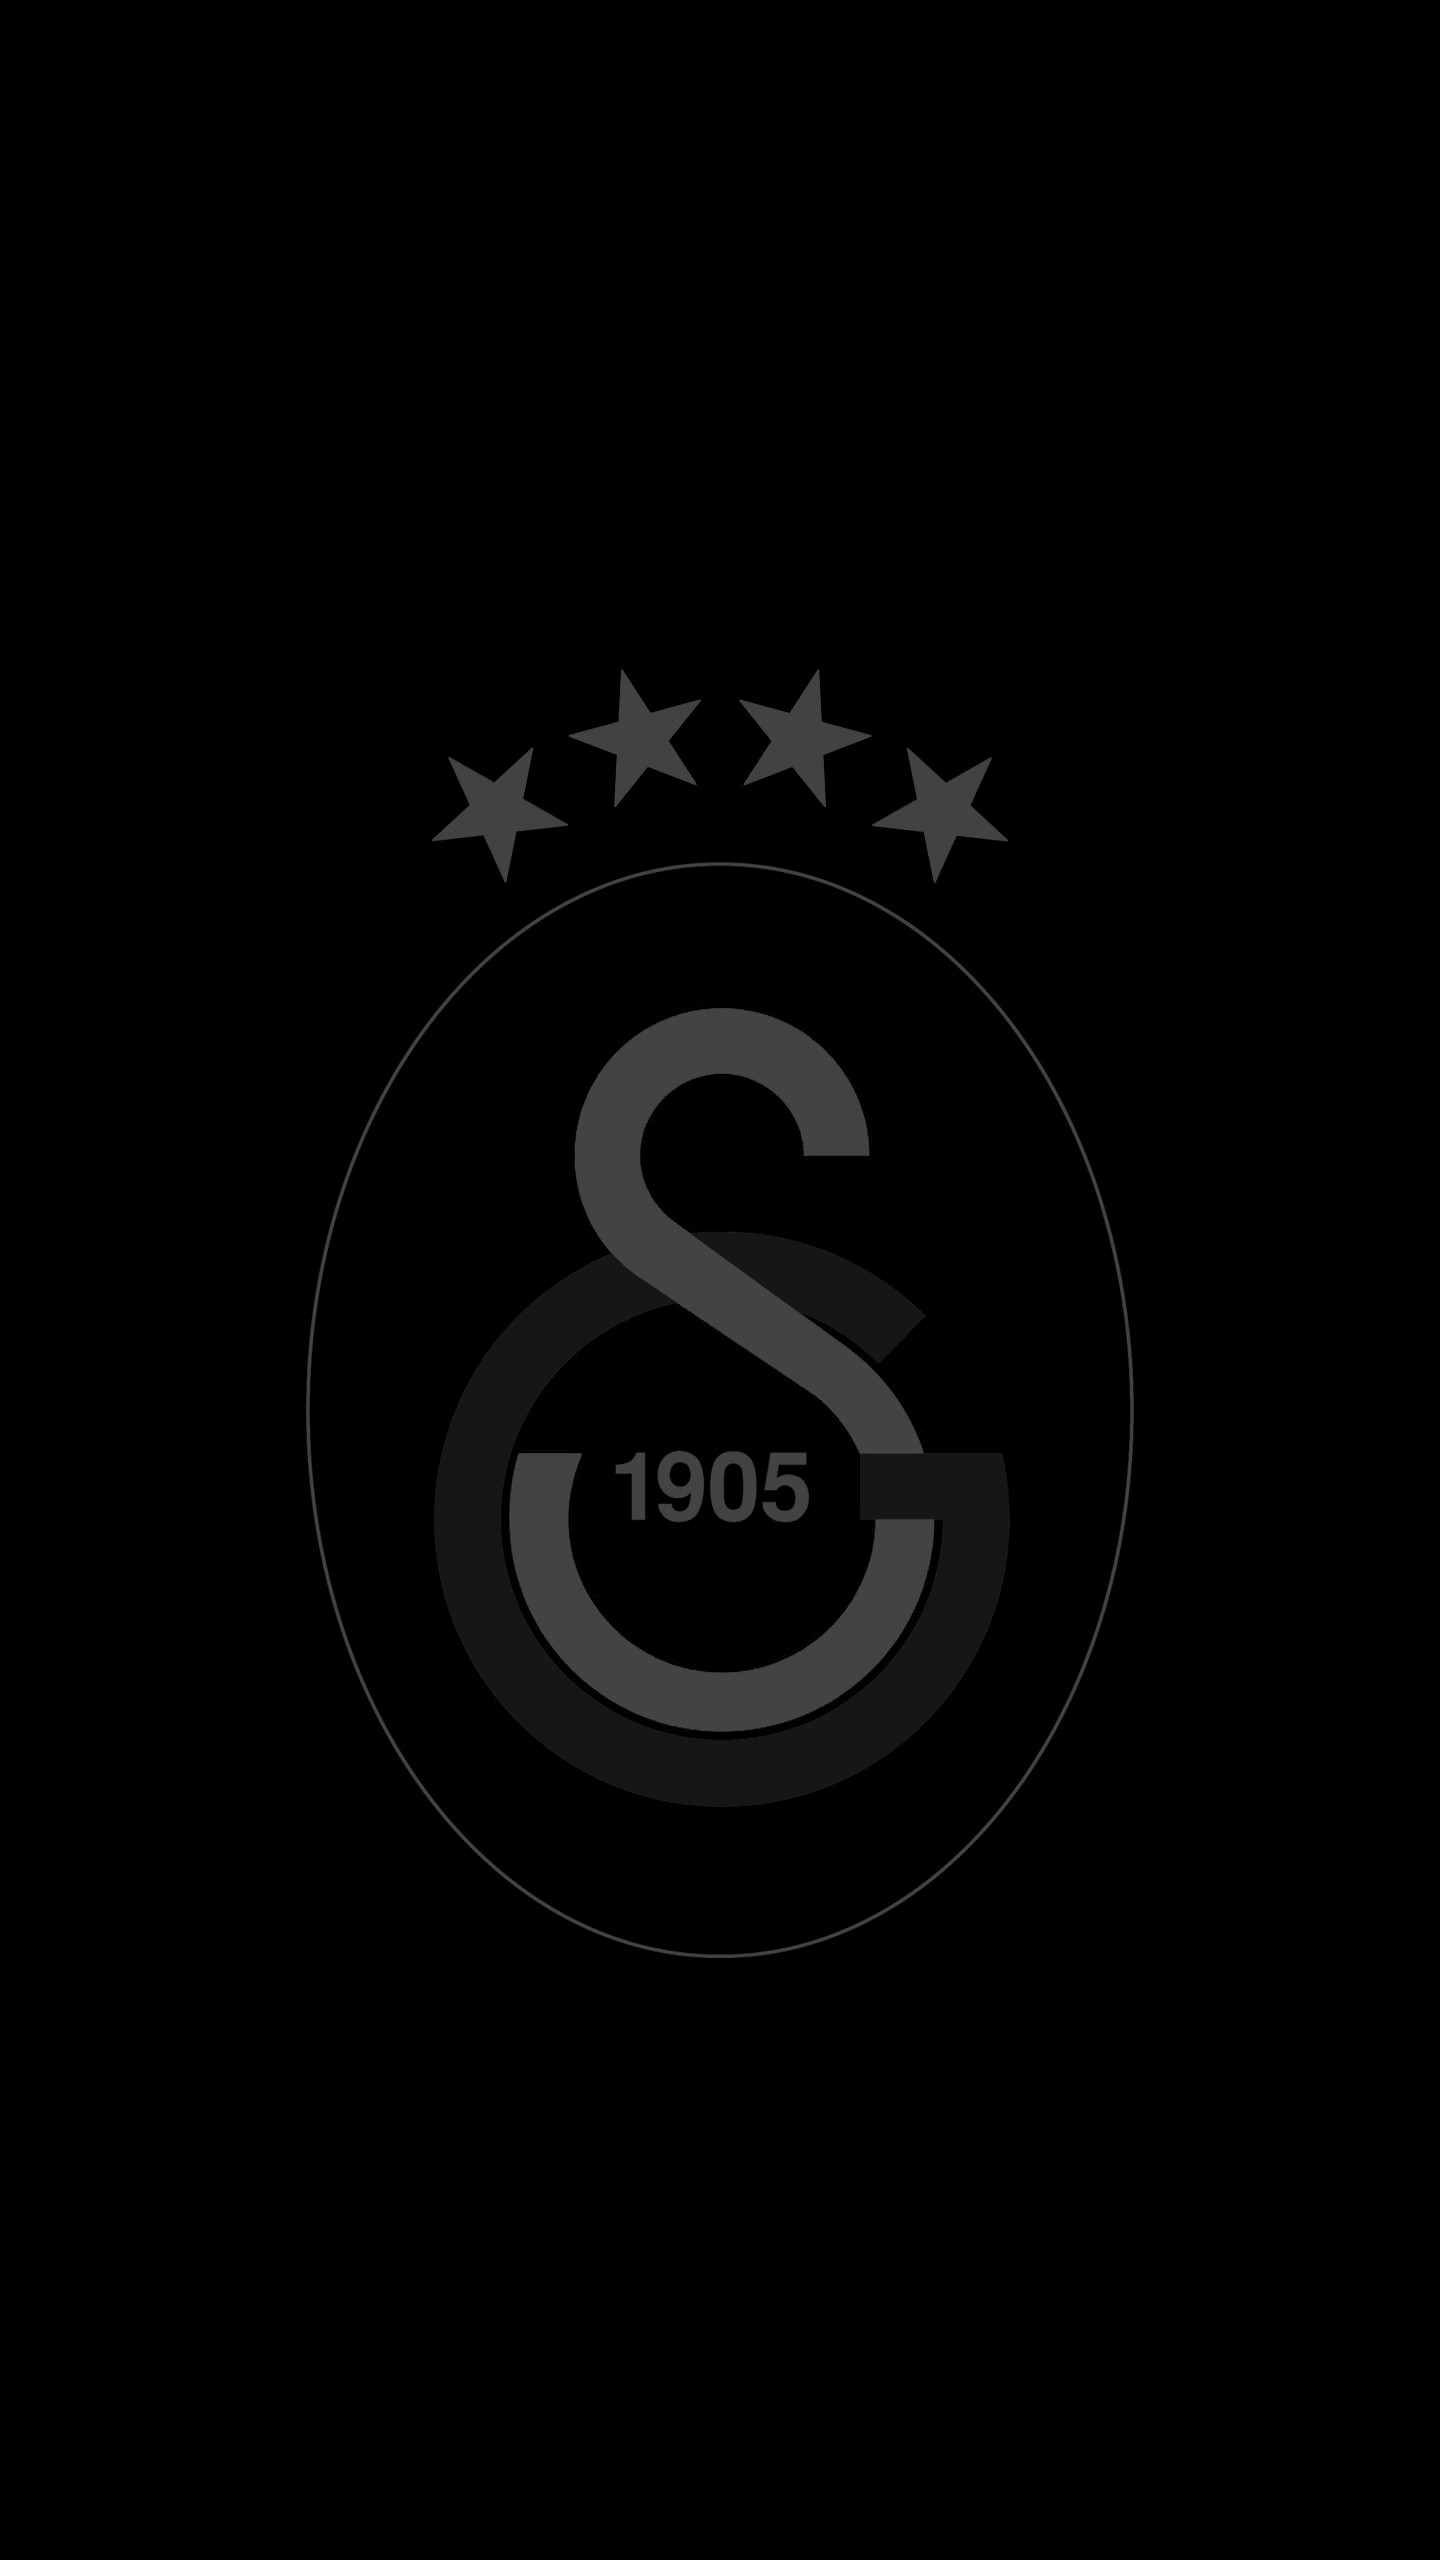 Galatasaray S K Soccer 1905 Year 1440x2560